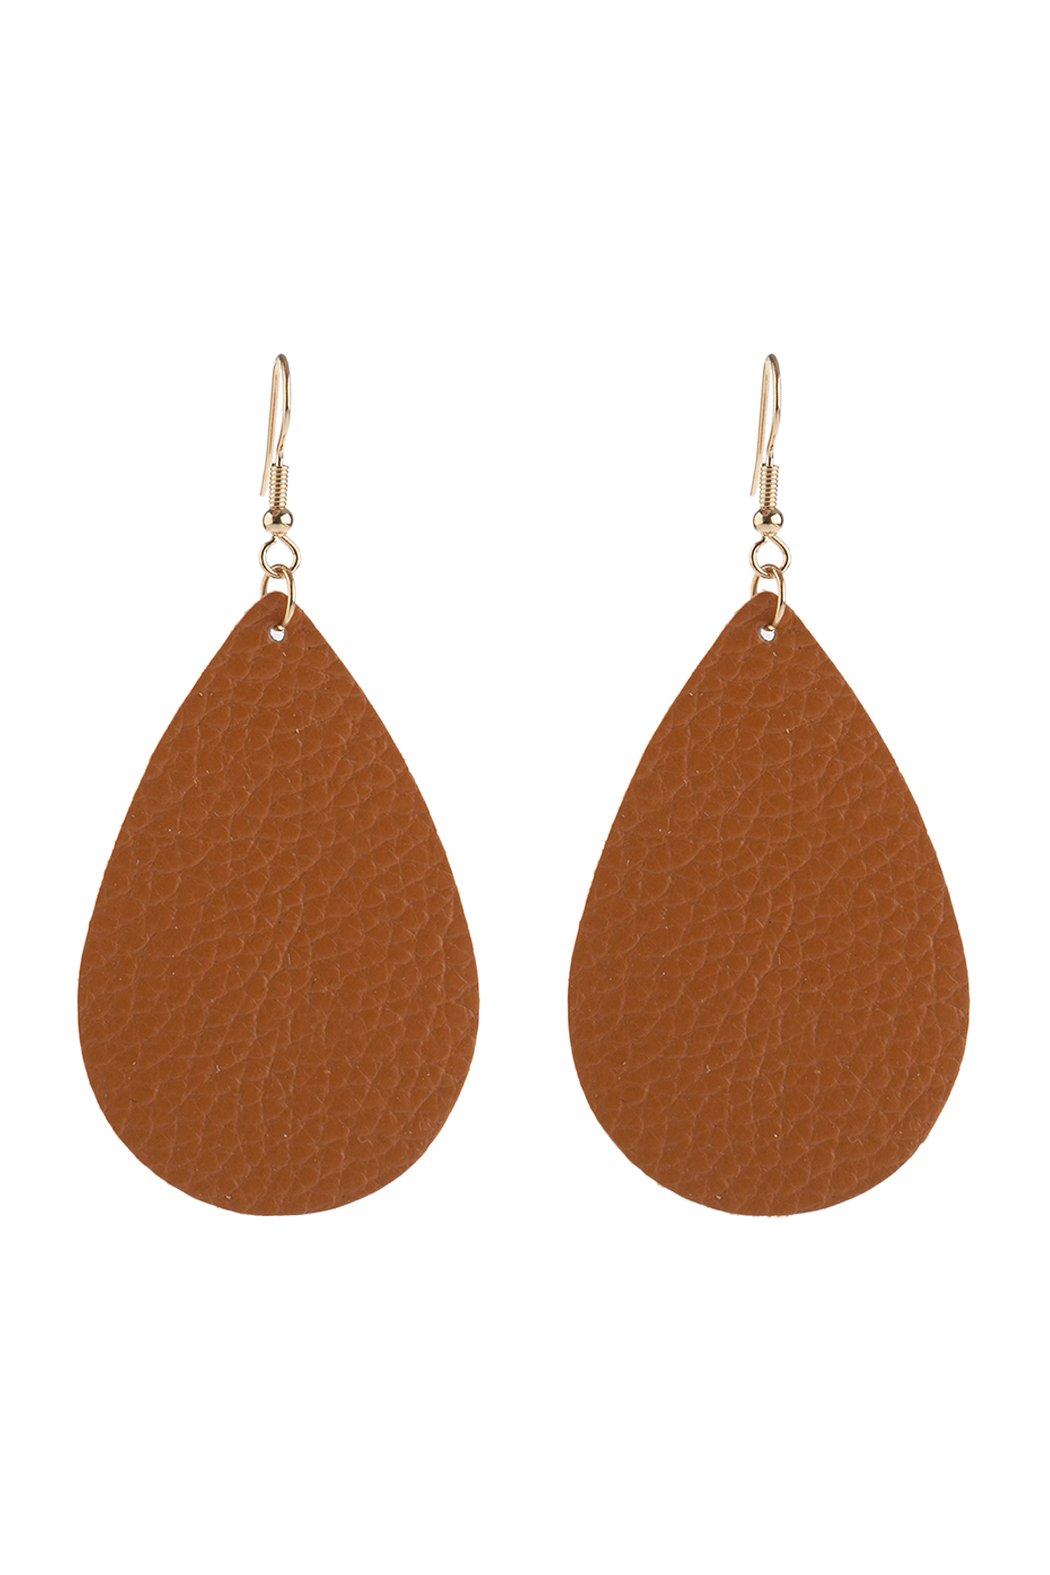 Hde2272 - Teardrop Leather Earrings